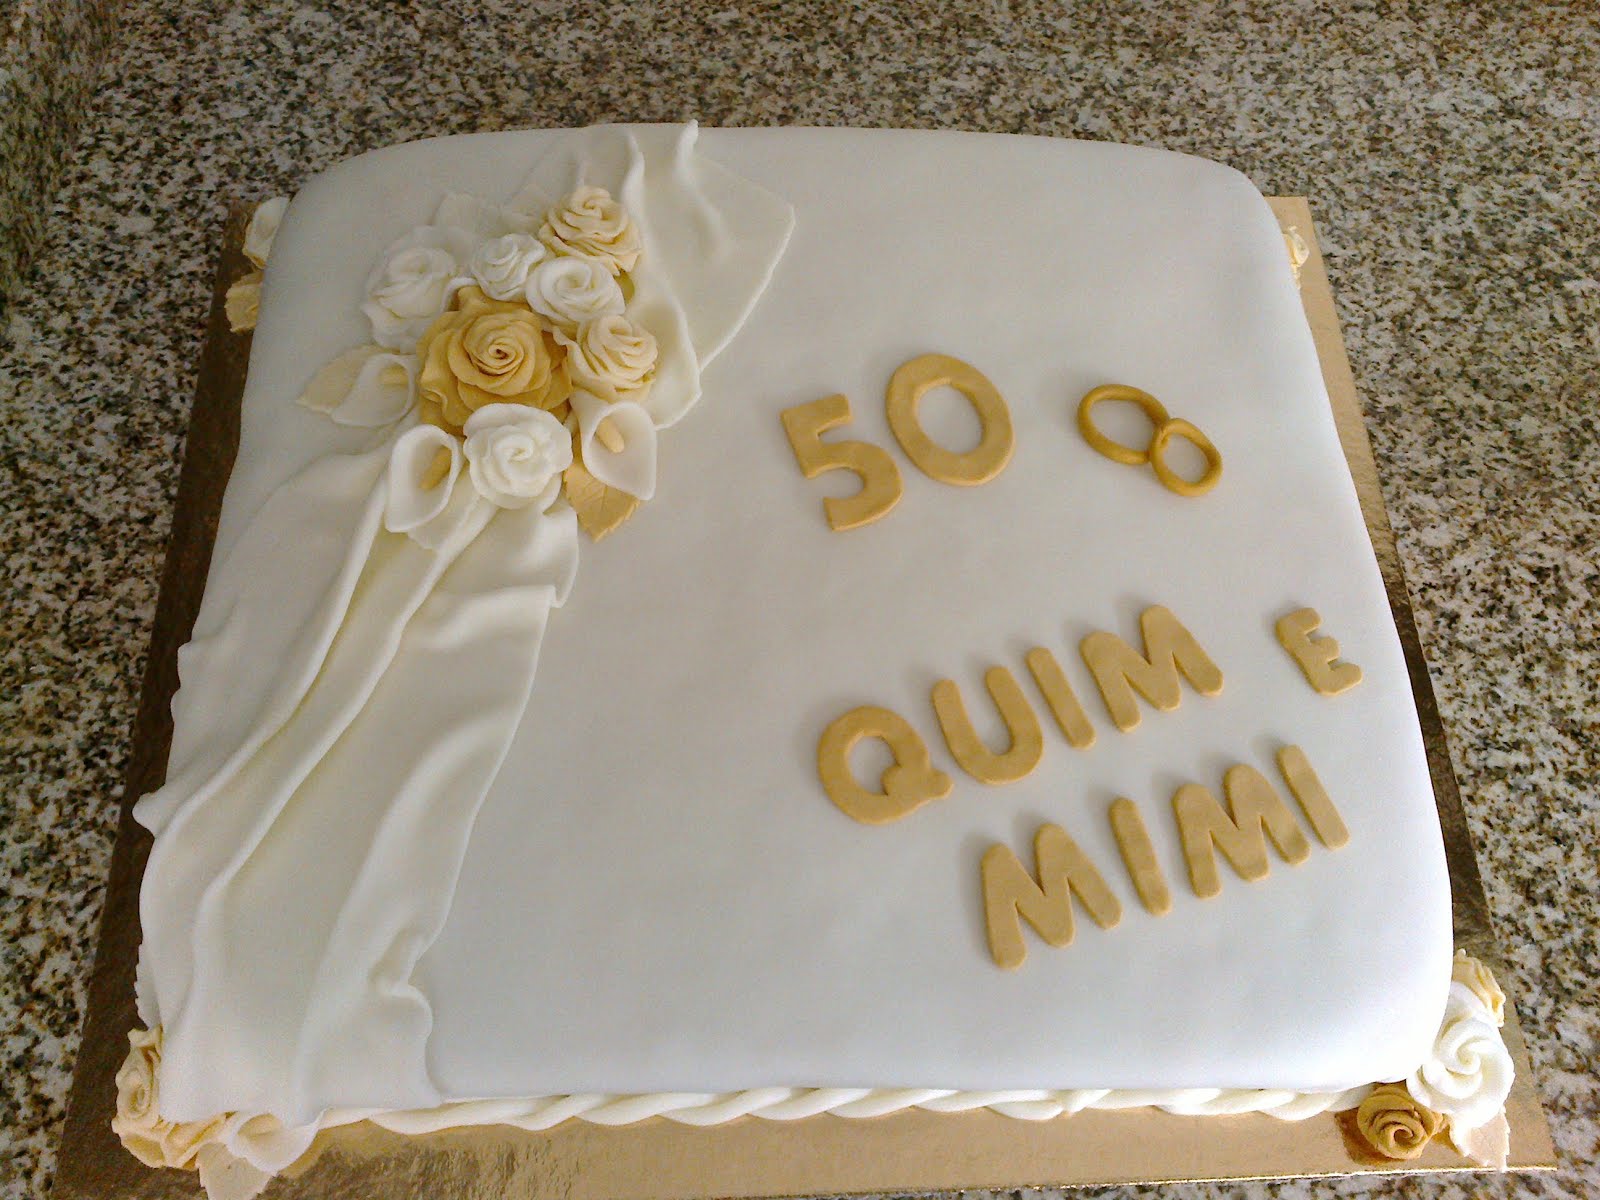 Guloso qb Bolo bodas de ouro 50 anos de casados